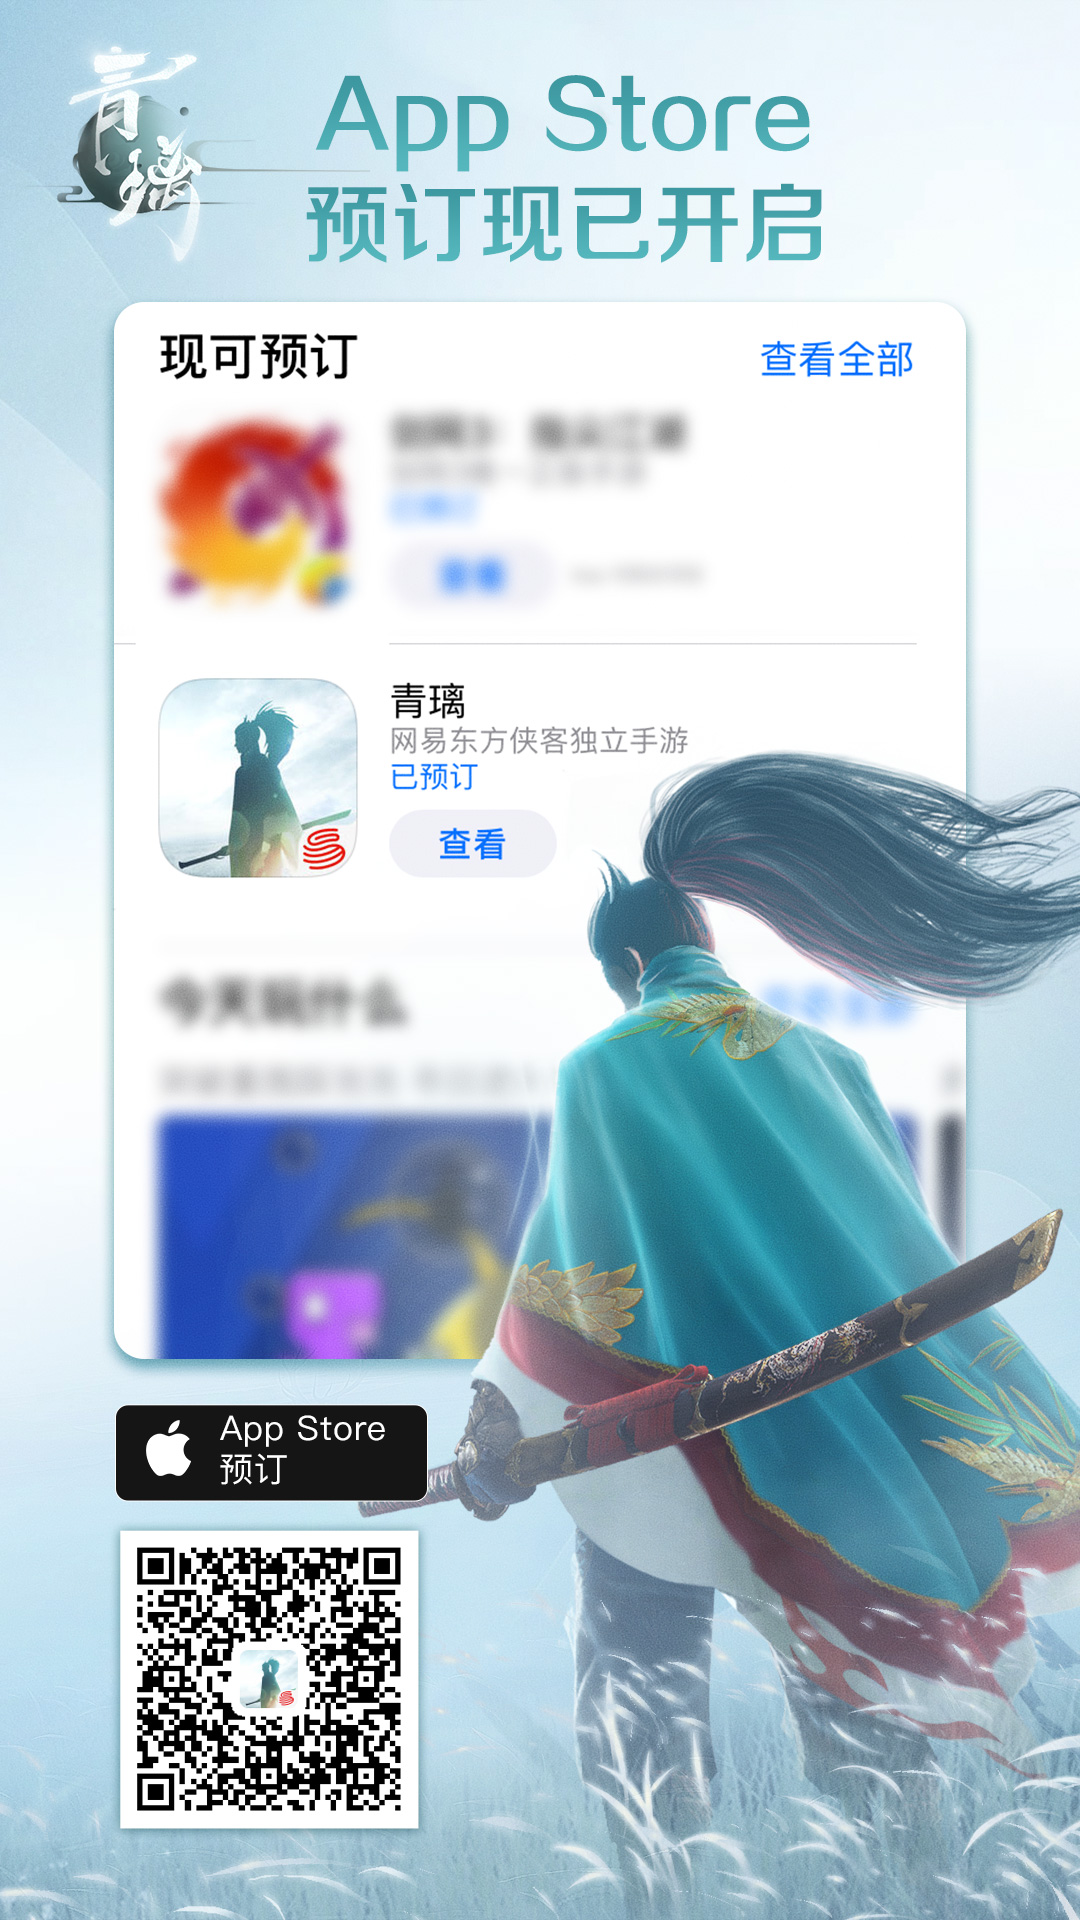 《青璃》App Store预订现已开启 能玩的侠客“电影”即将上映